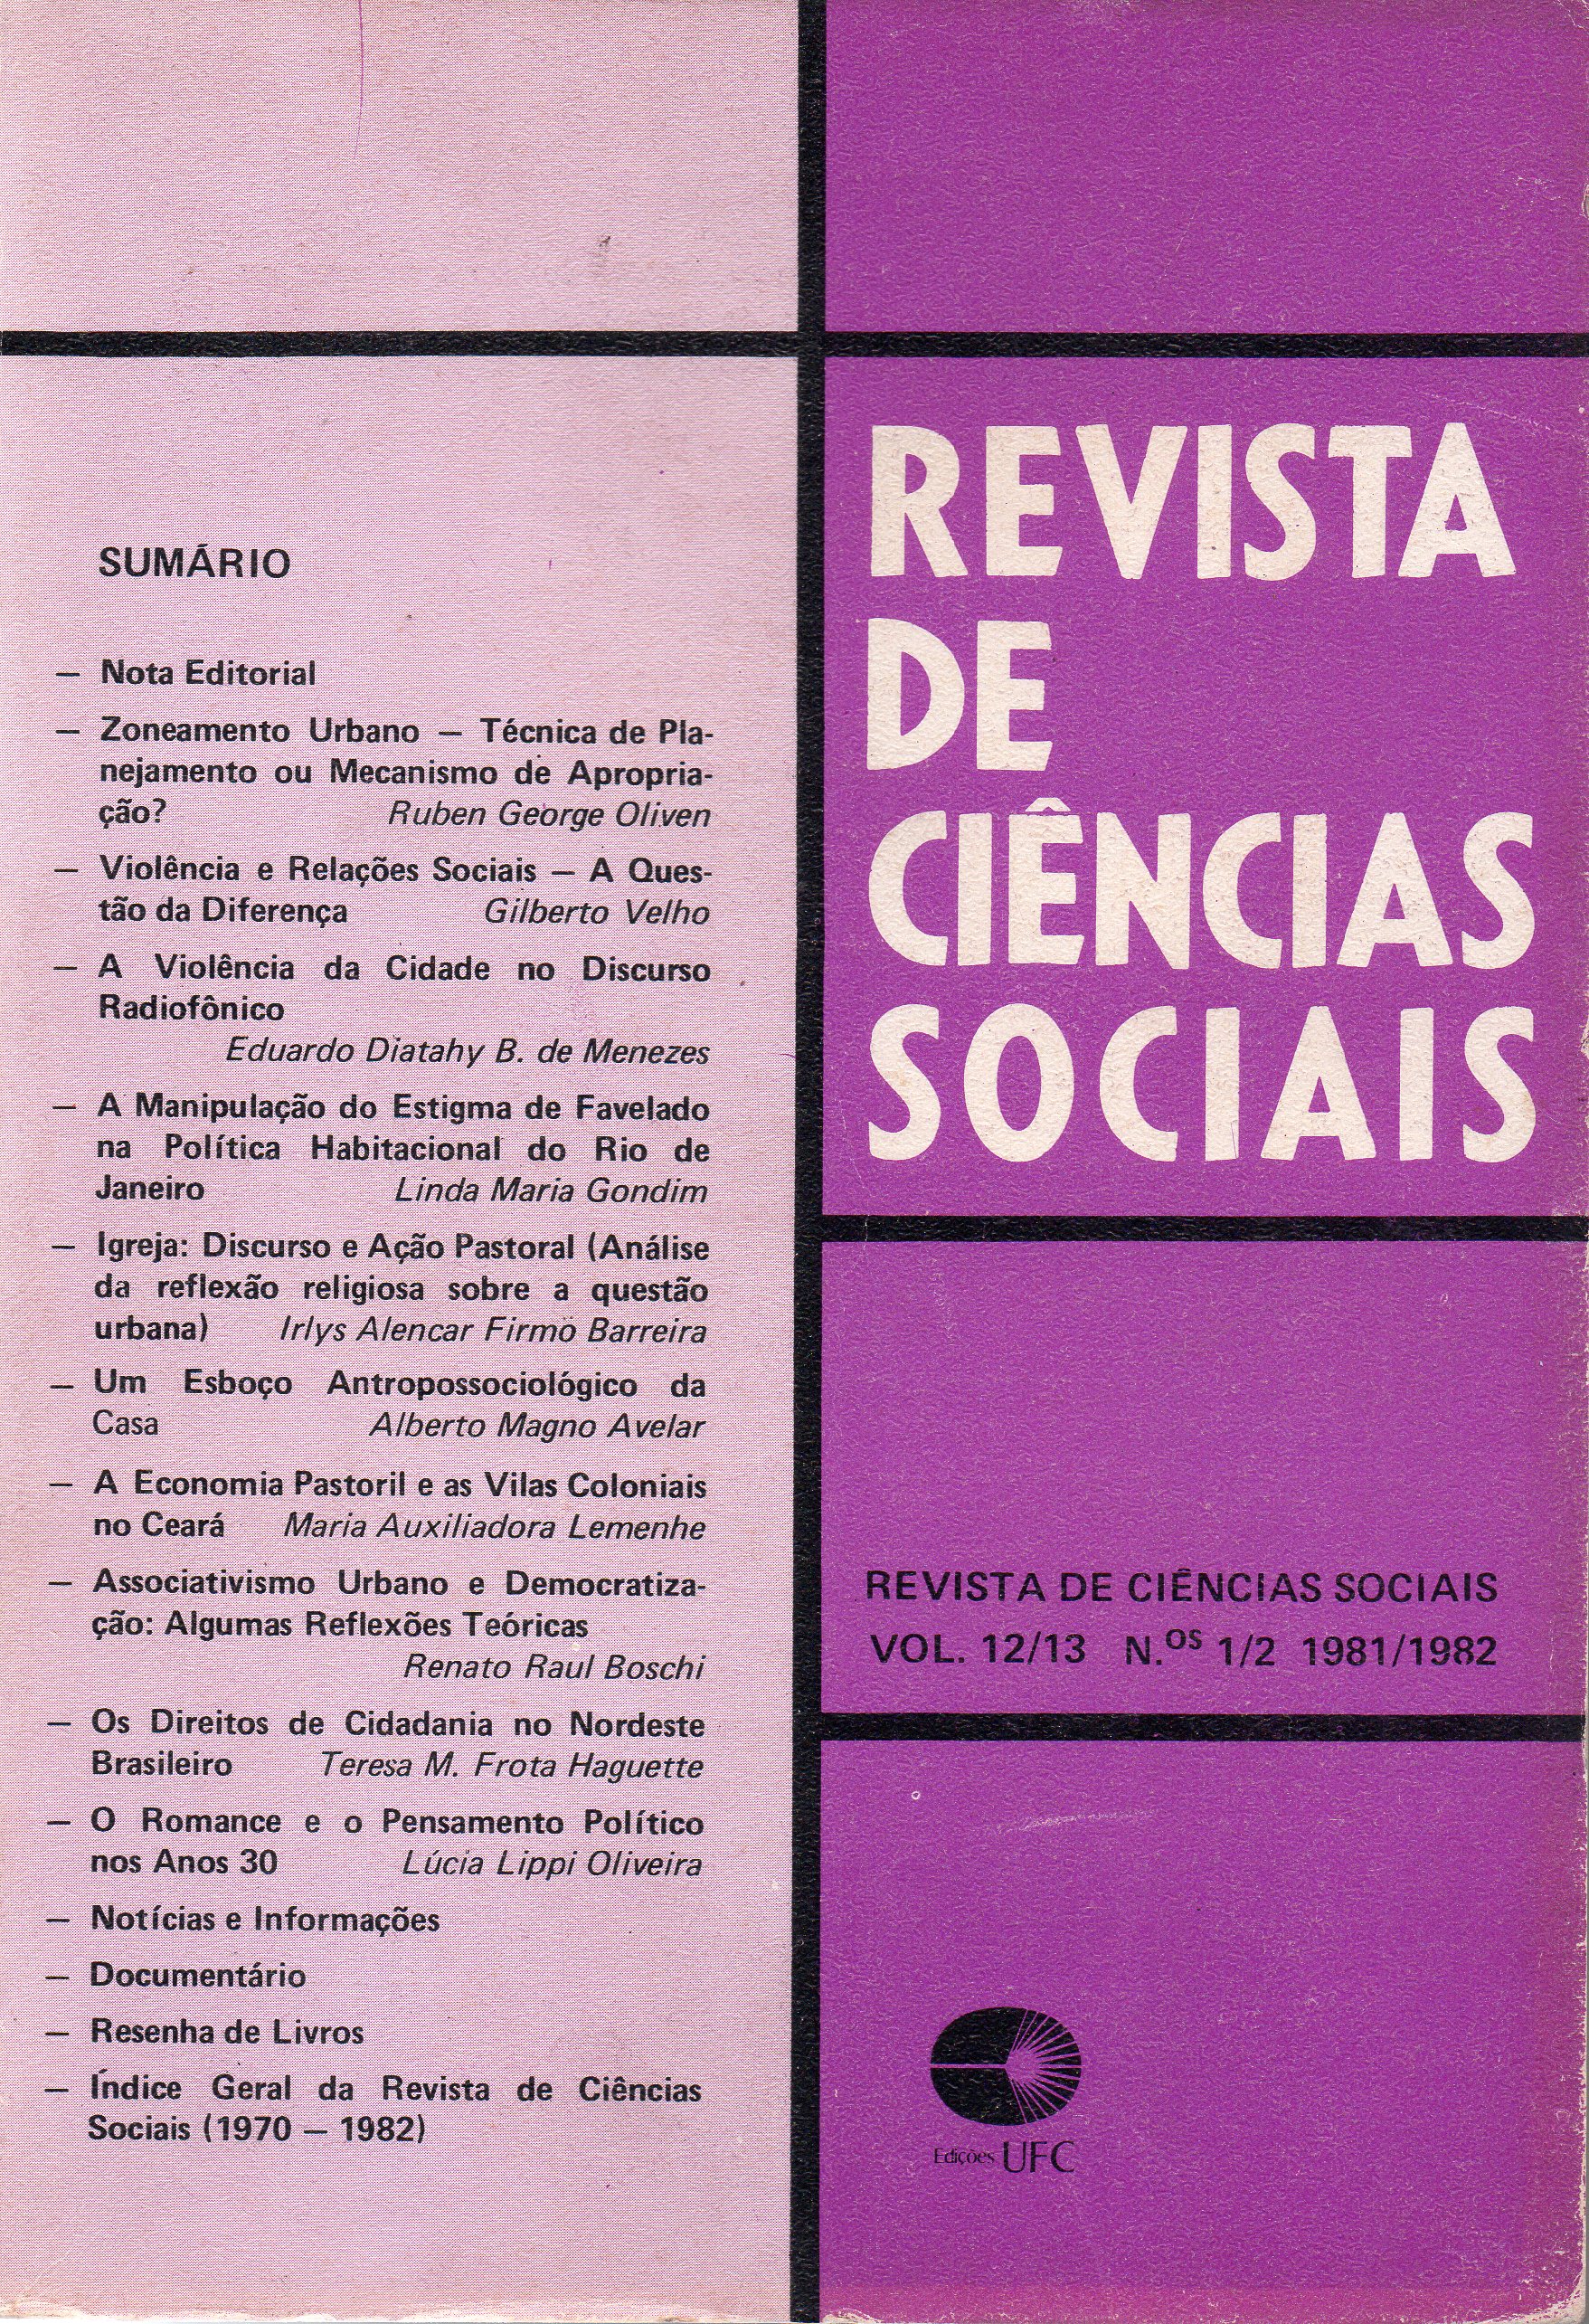 					View Vol. 13 No. 1 e 2 (1982): Questões Urbanas e Políticas 
				